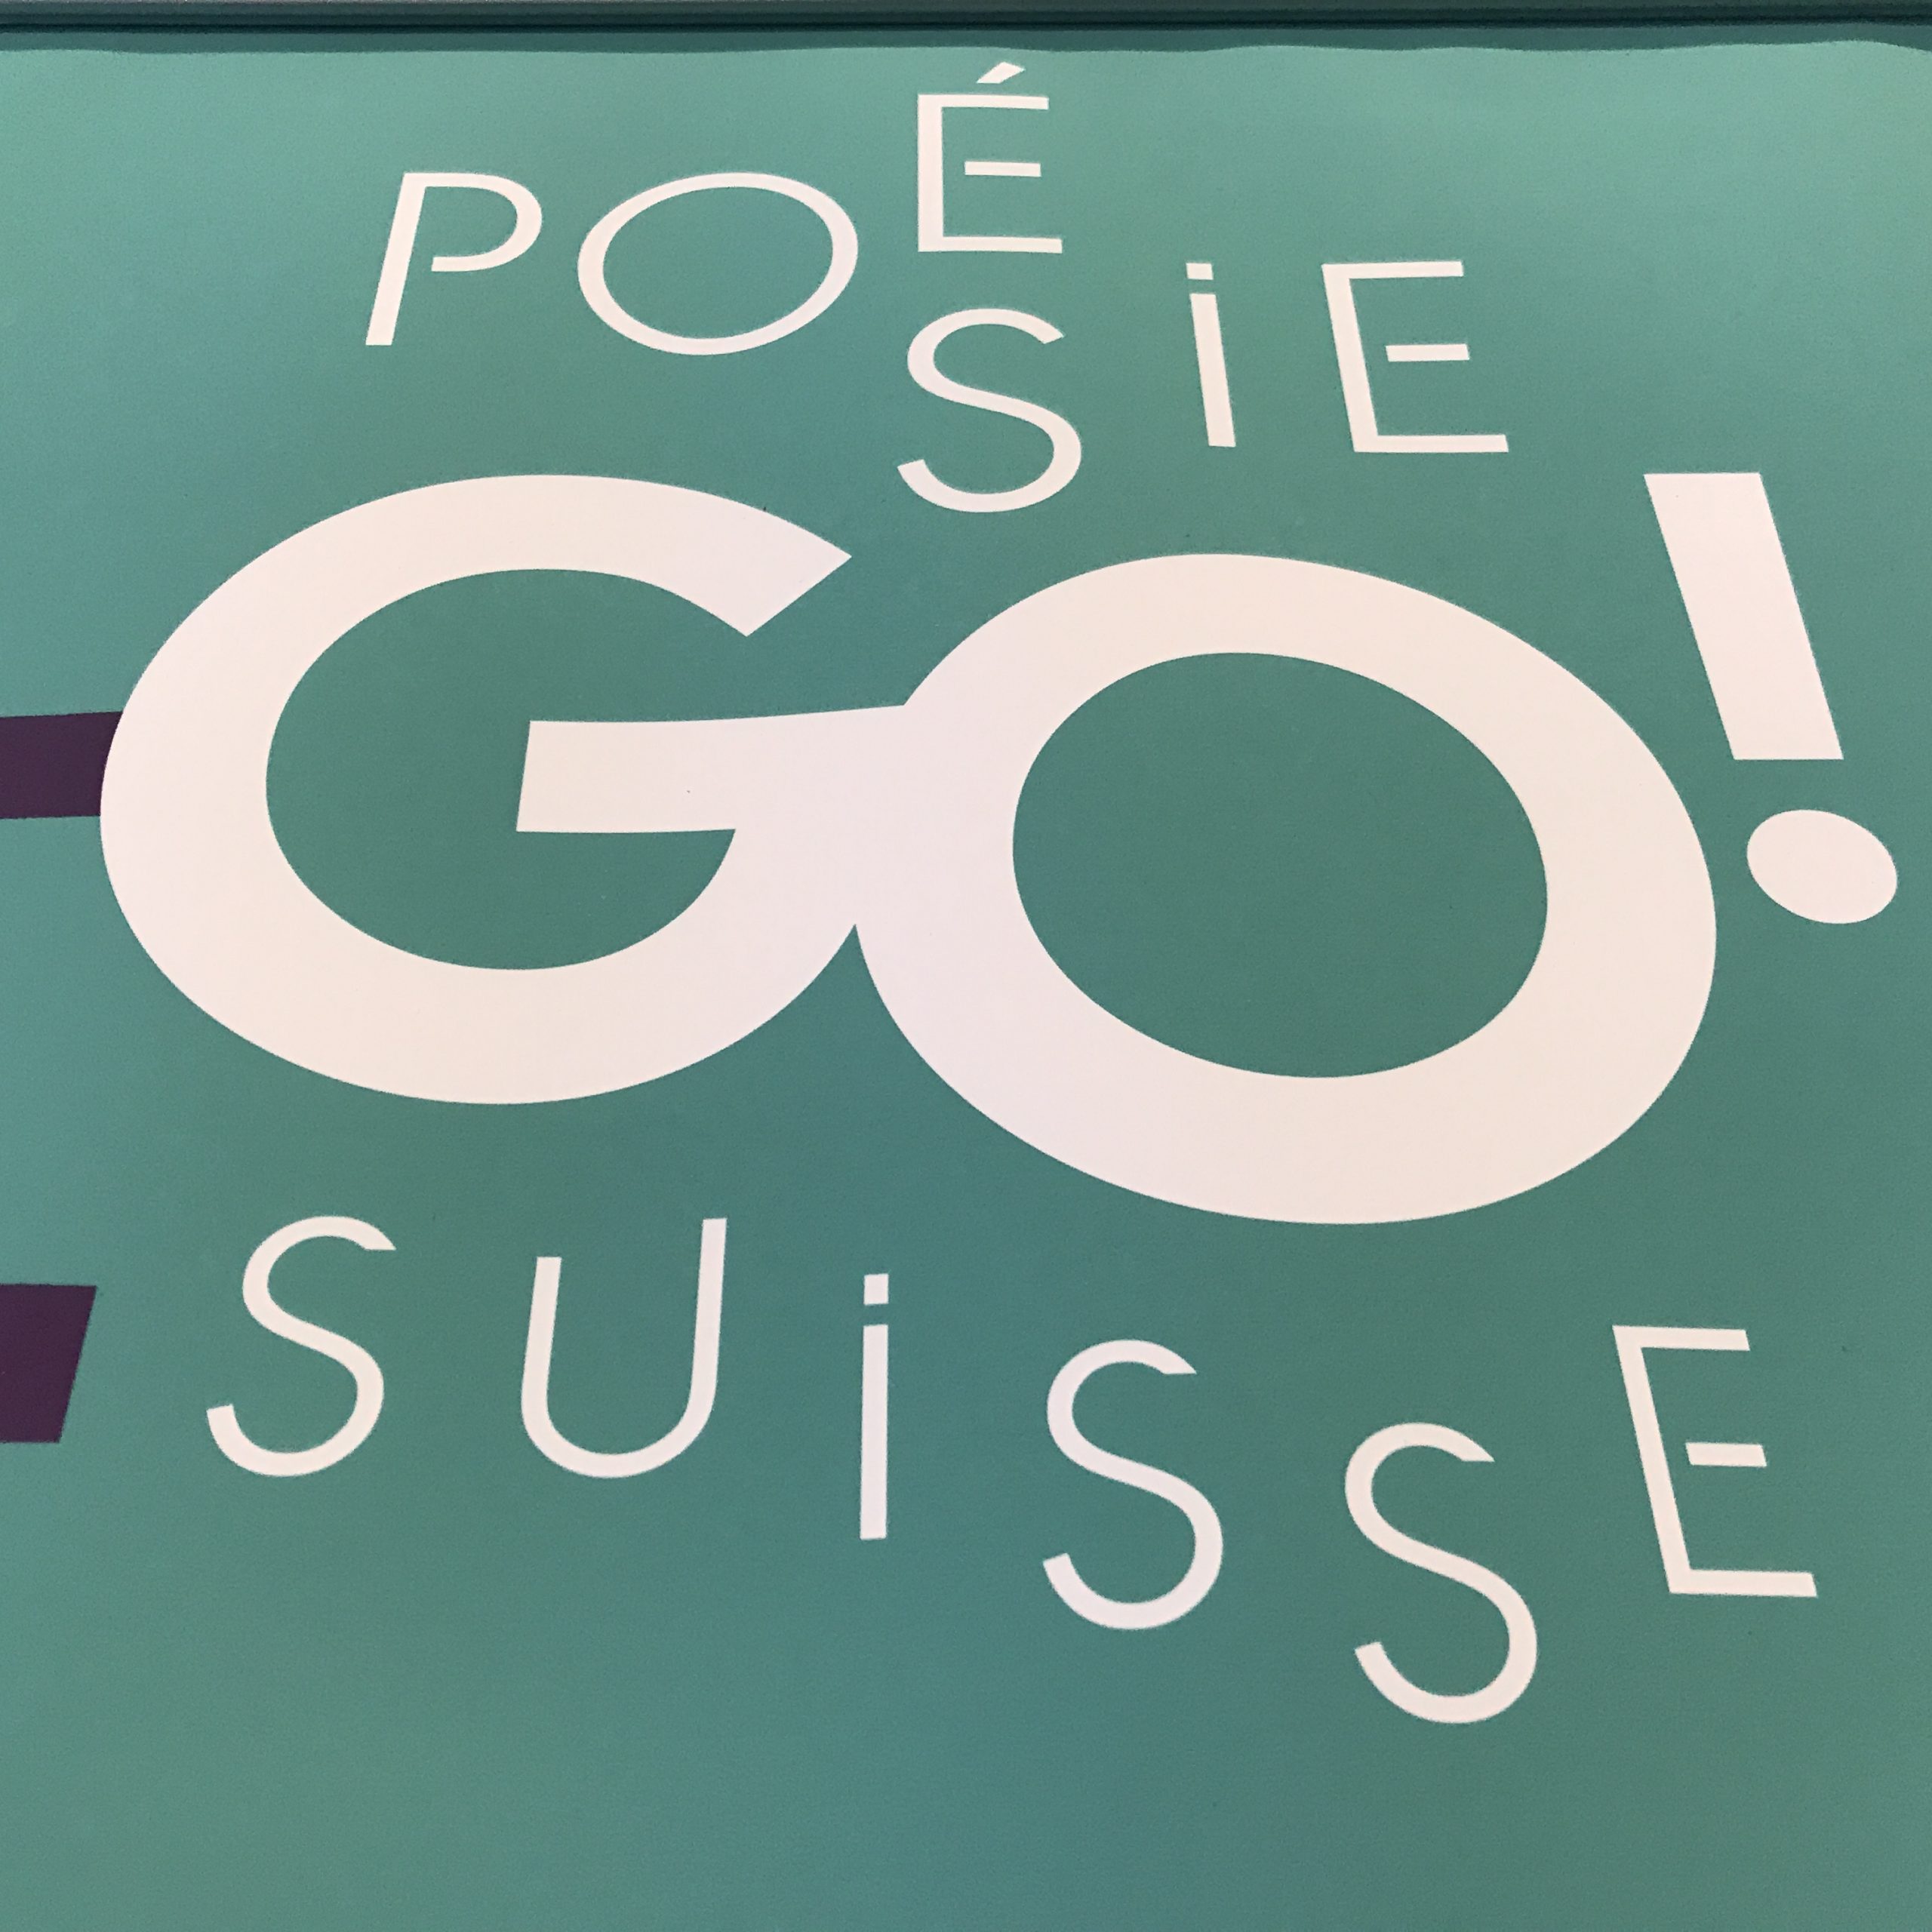 You are currently viewing PoésieGo ! Projet inédit de balados avec six poètes québécois et six poètes suisses